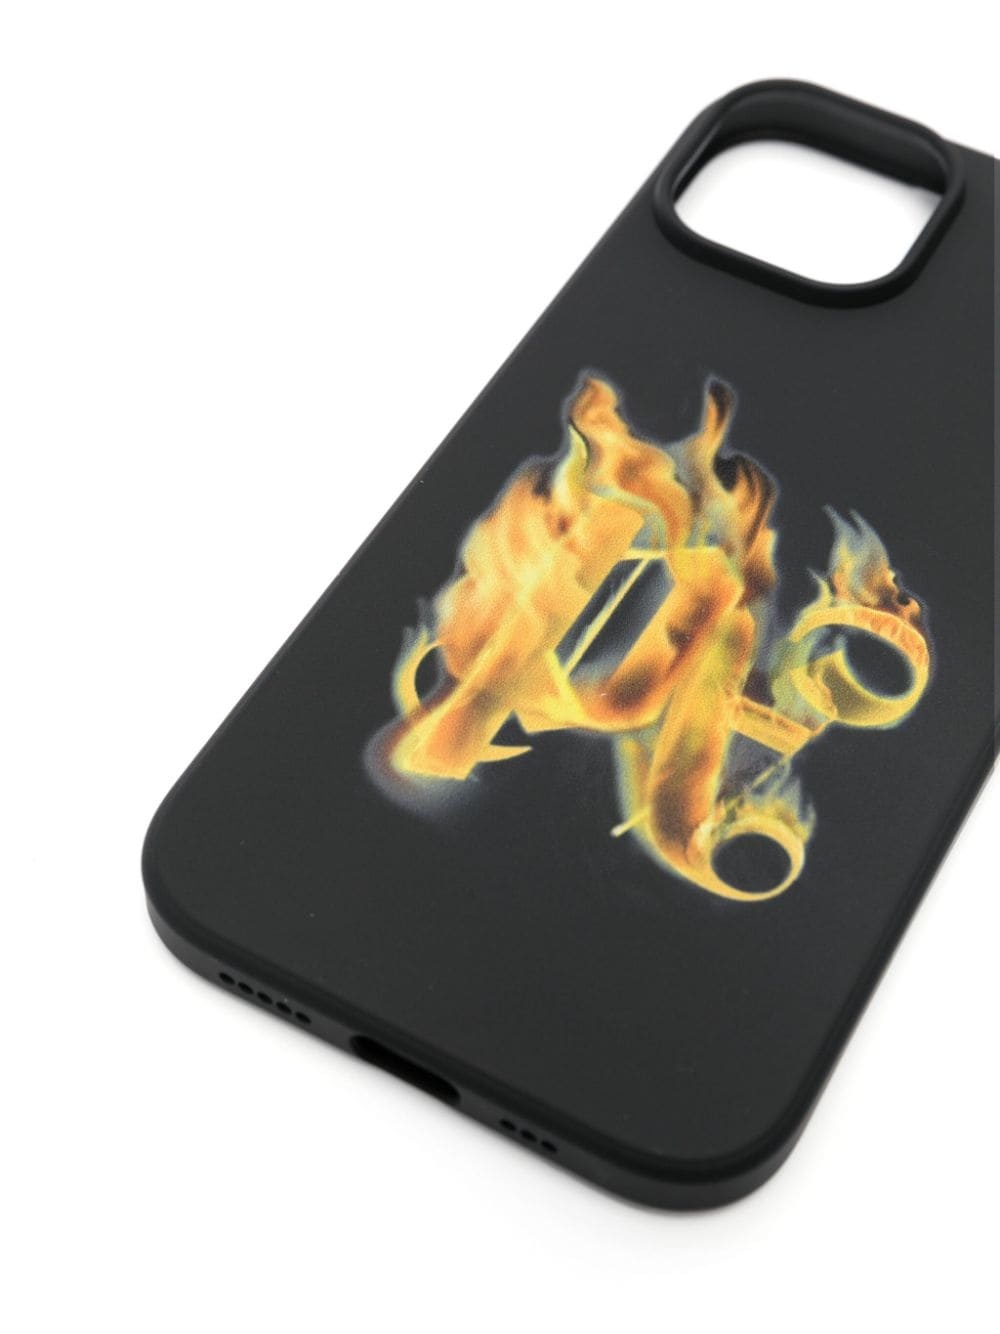 Burning PA iPhone 15 case - 3